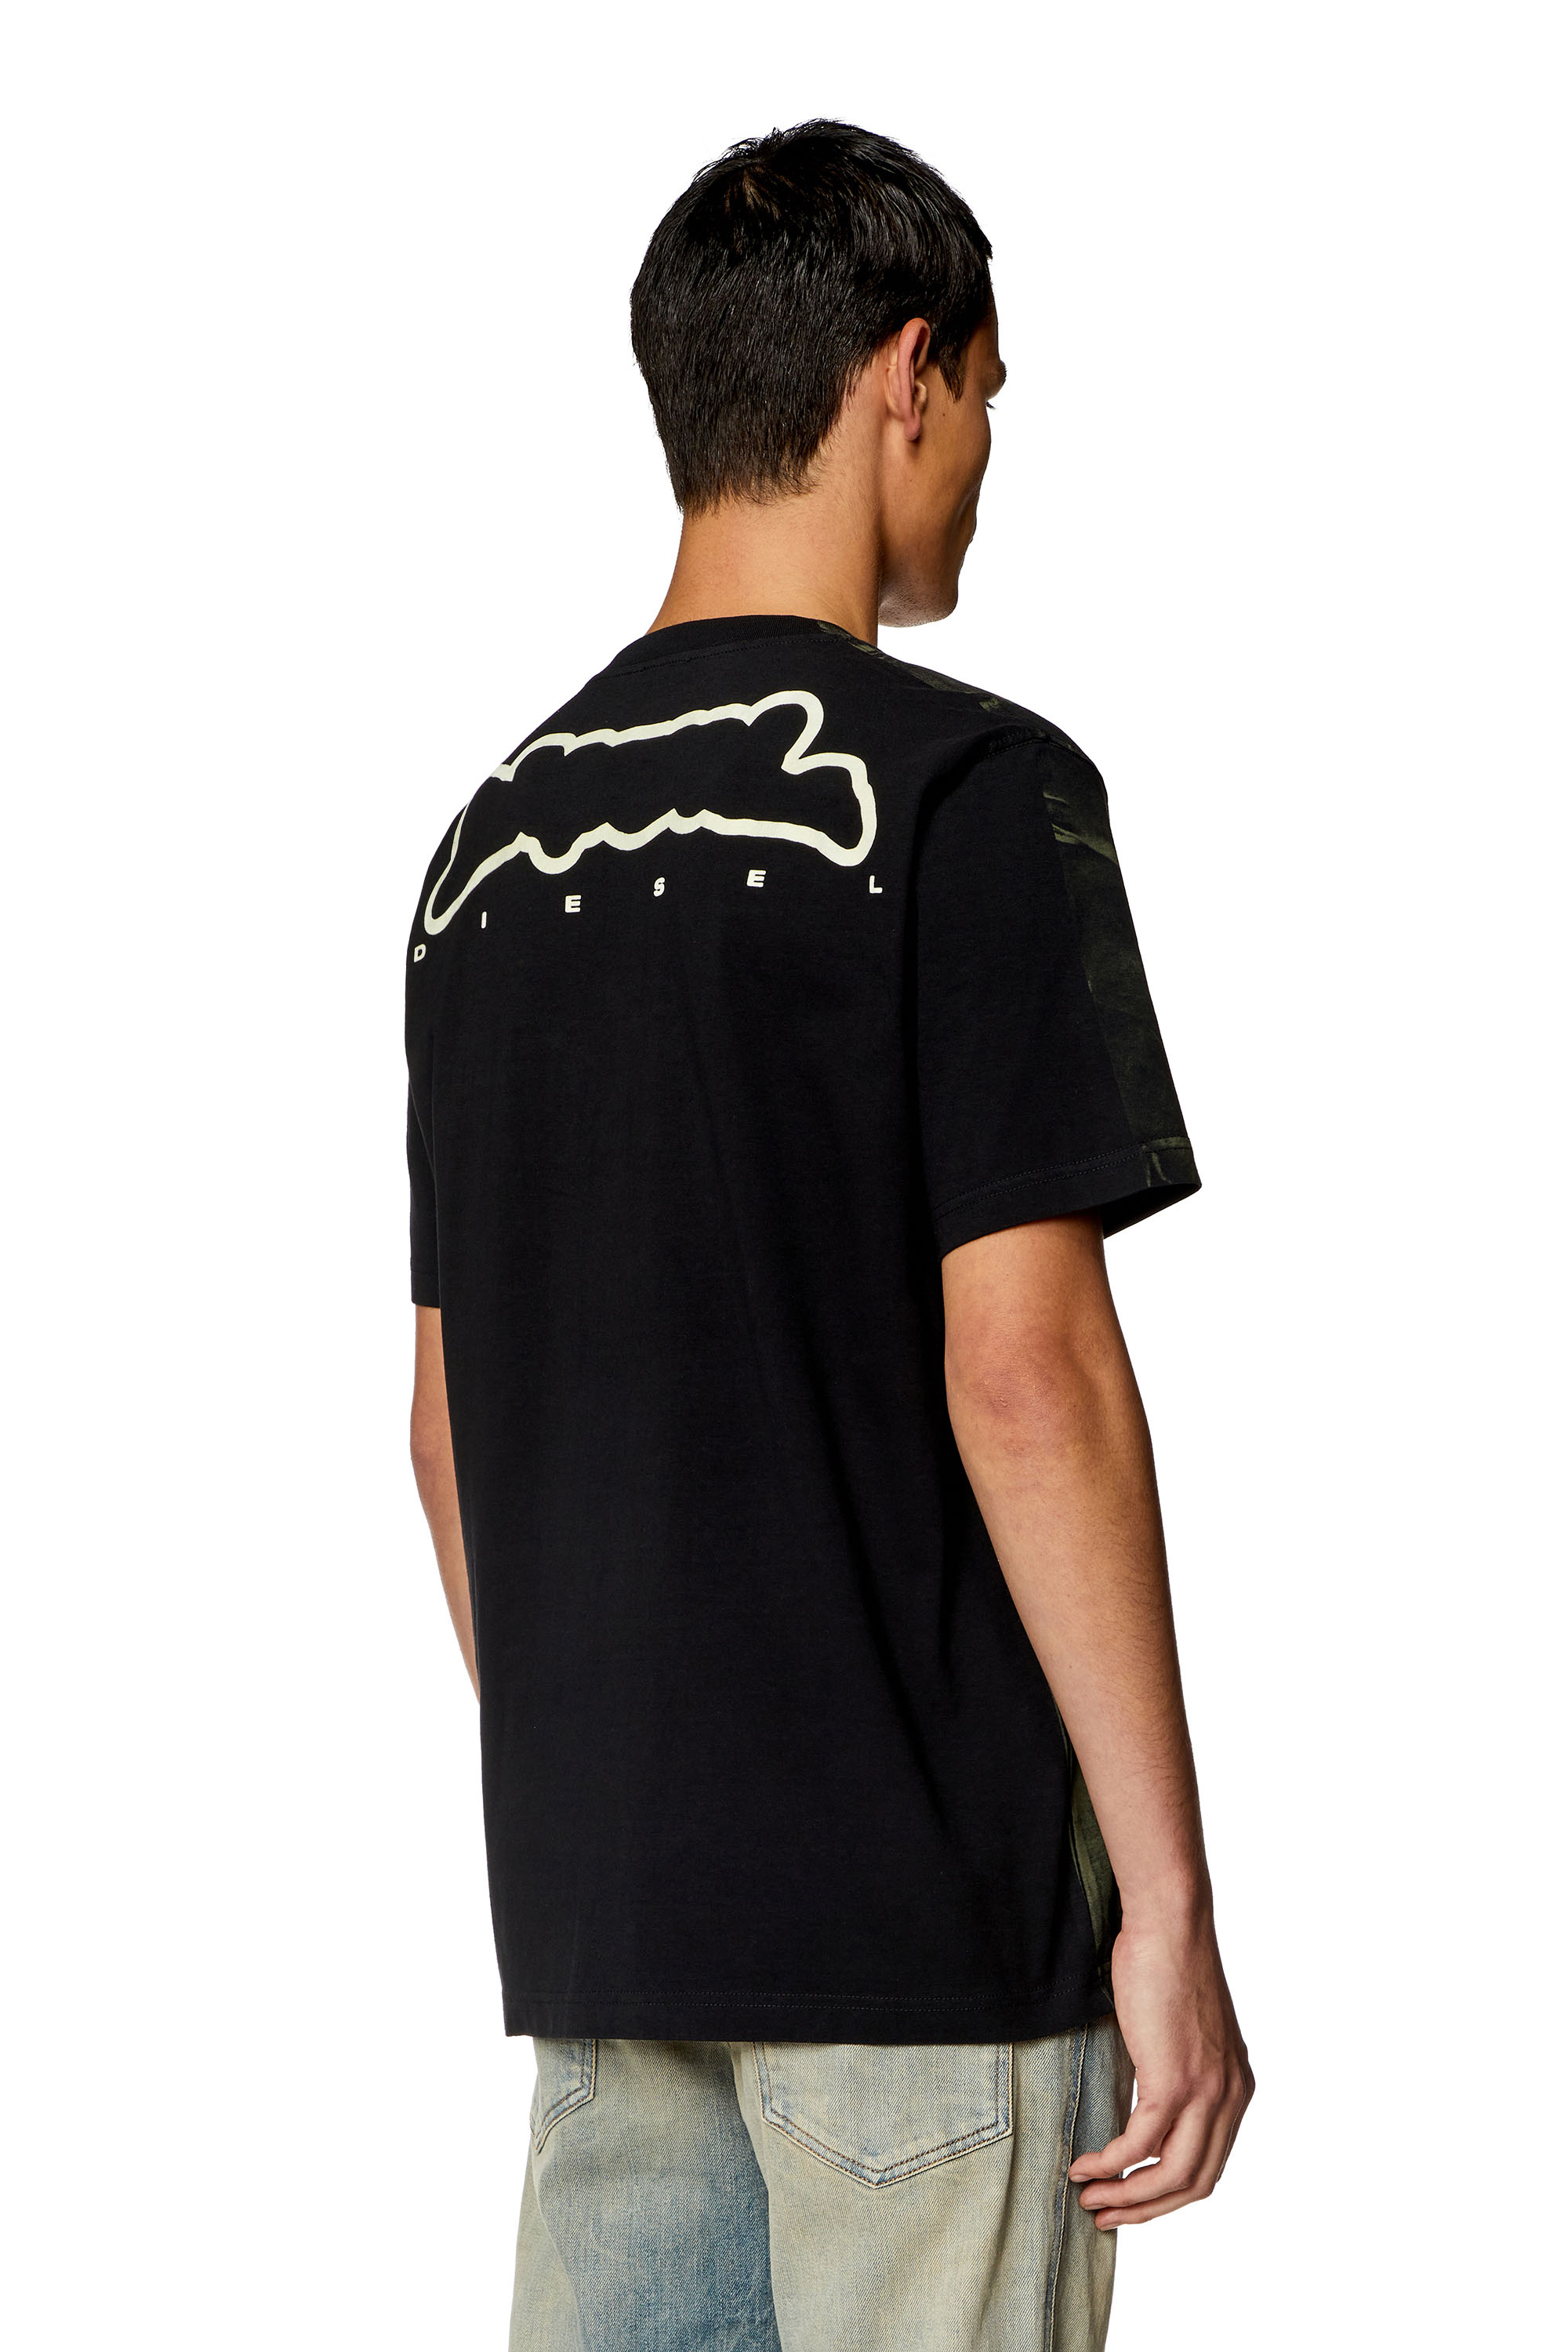 Diesel - T-JUST-N3, Homme T-shirt avec imprimé effet froissé in Polychrome - Image 2